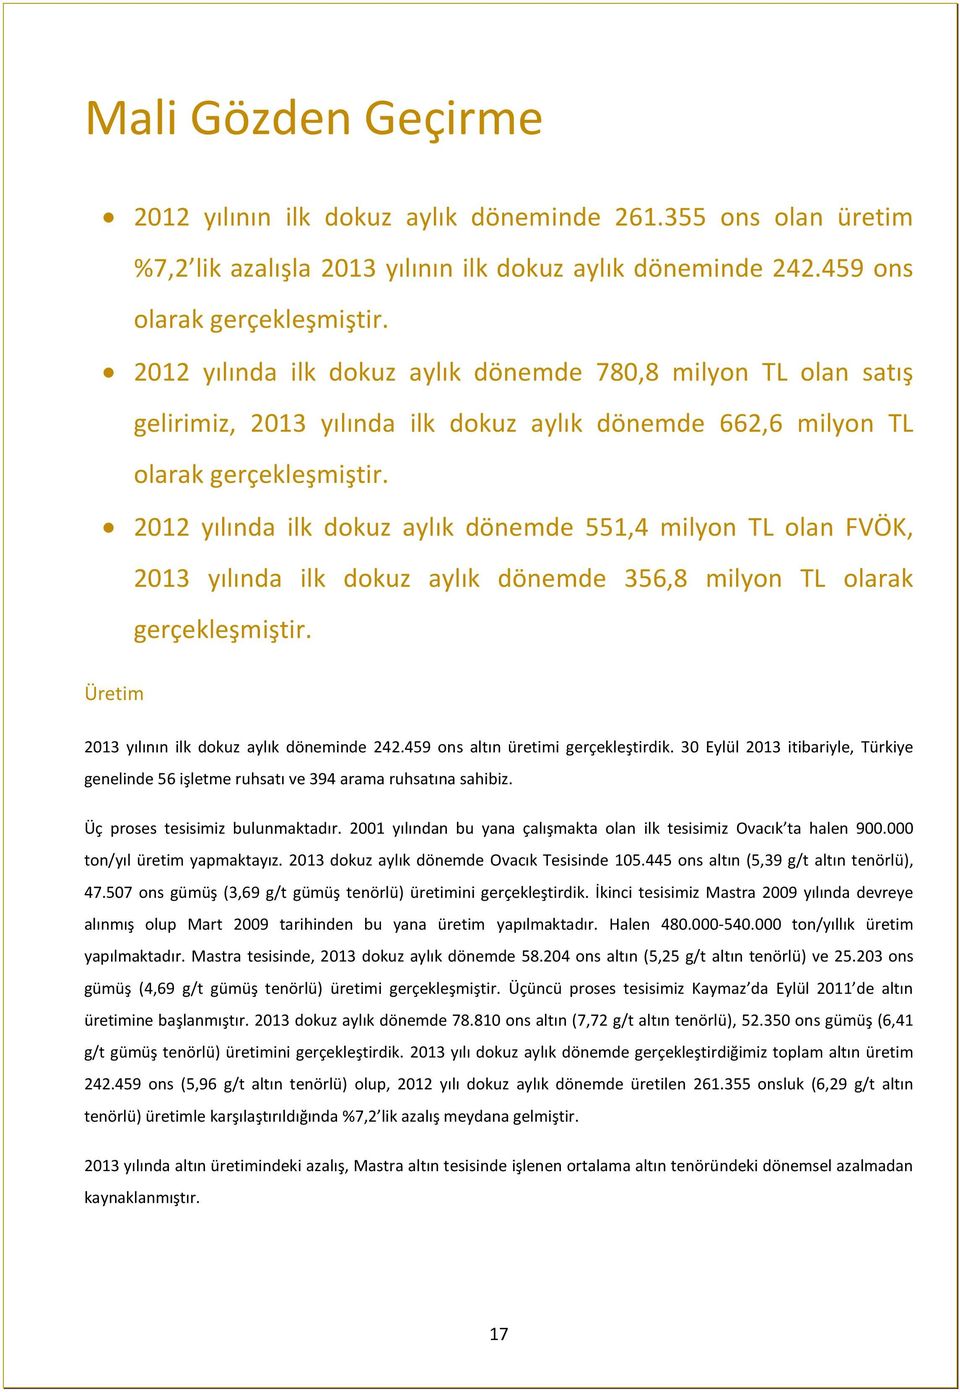 2012 yılında ilk dokuz aylık dönemde 551,4 milyon TL olan FVÖK, 2013 yılında ilk dokuz aylık dönemde 356,8 milyon TL olarak gerçekleşmiştir. Üretim 2013 yılının ilk dokuz aylık döneminde 242.